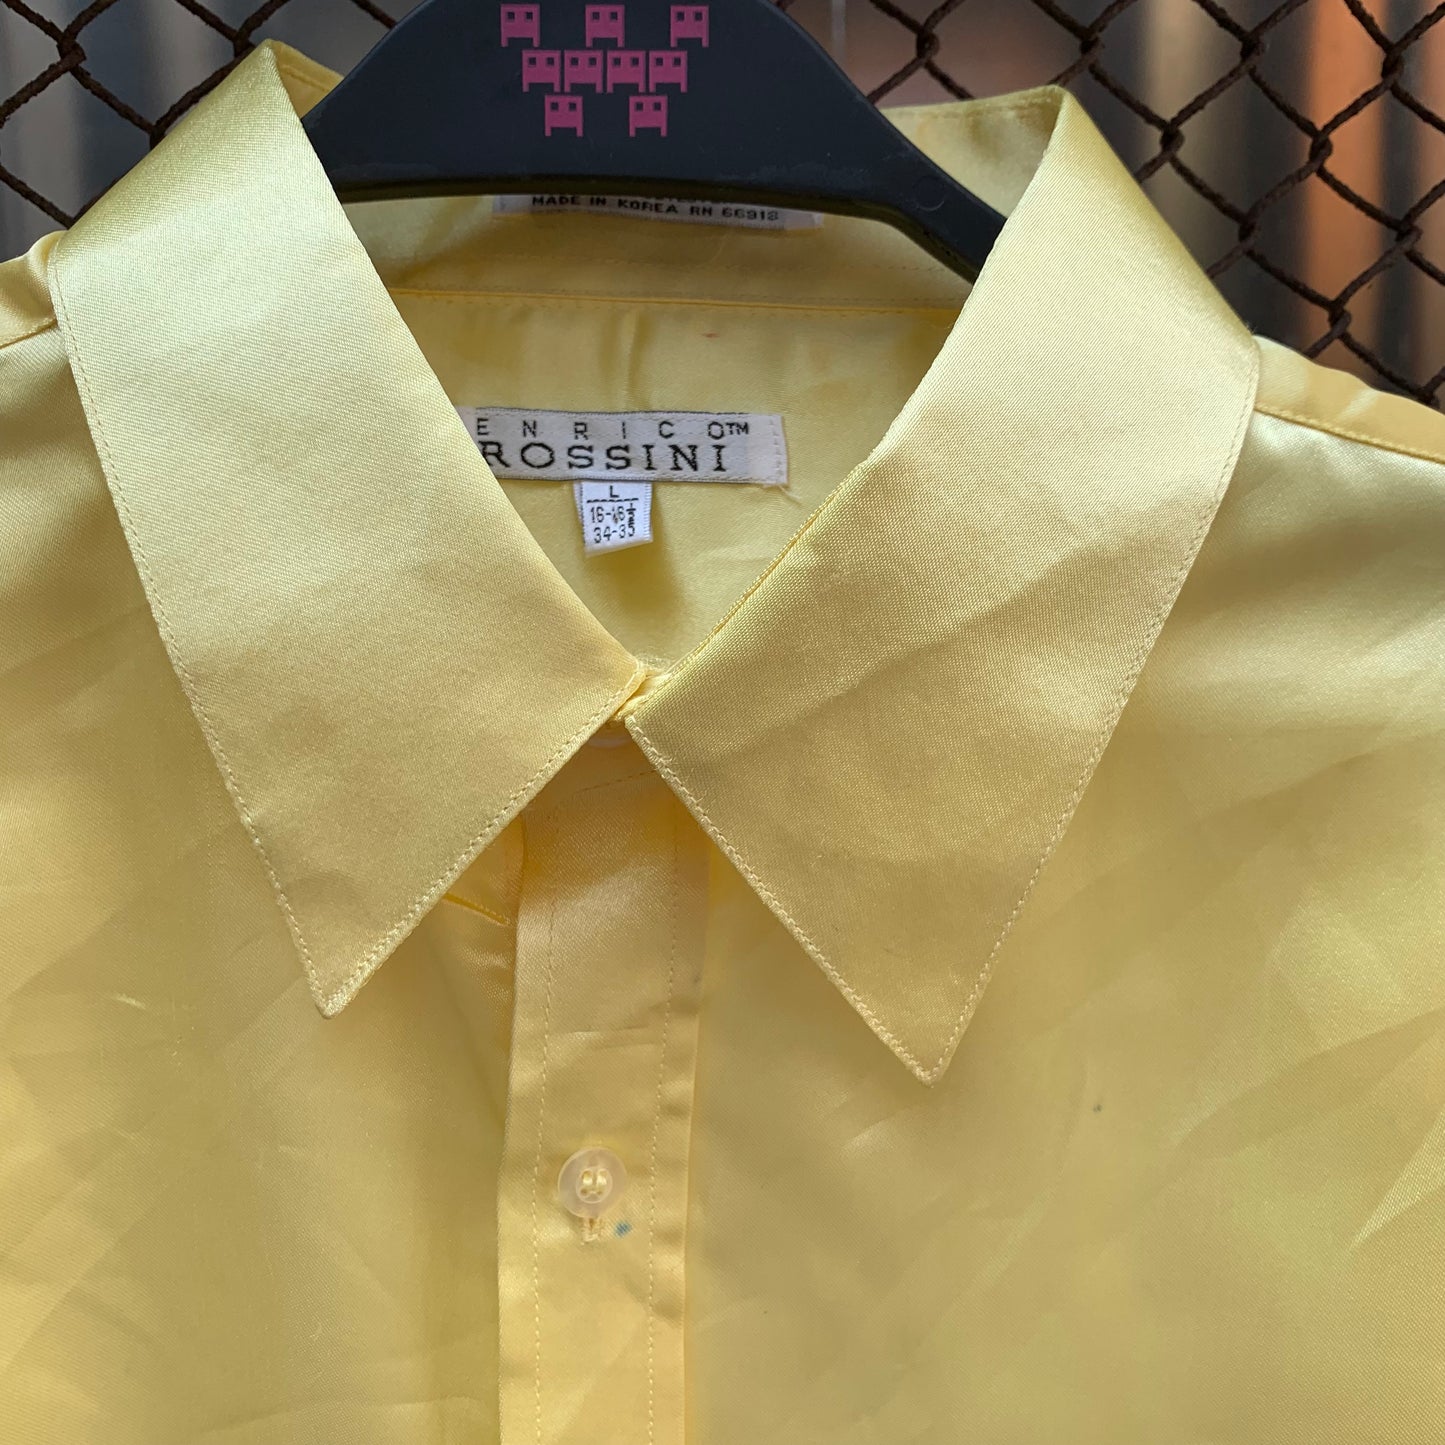 70s Yellow Shirt